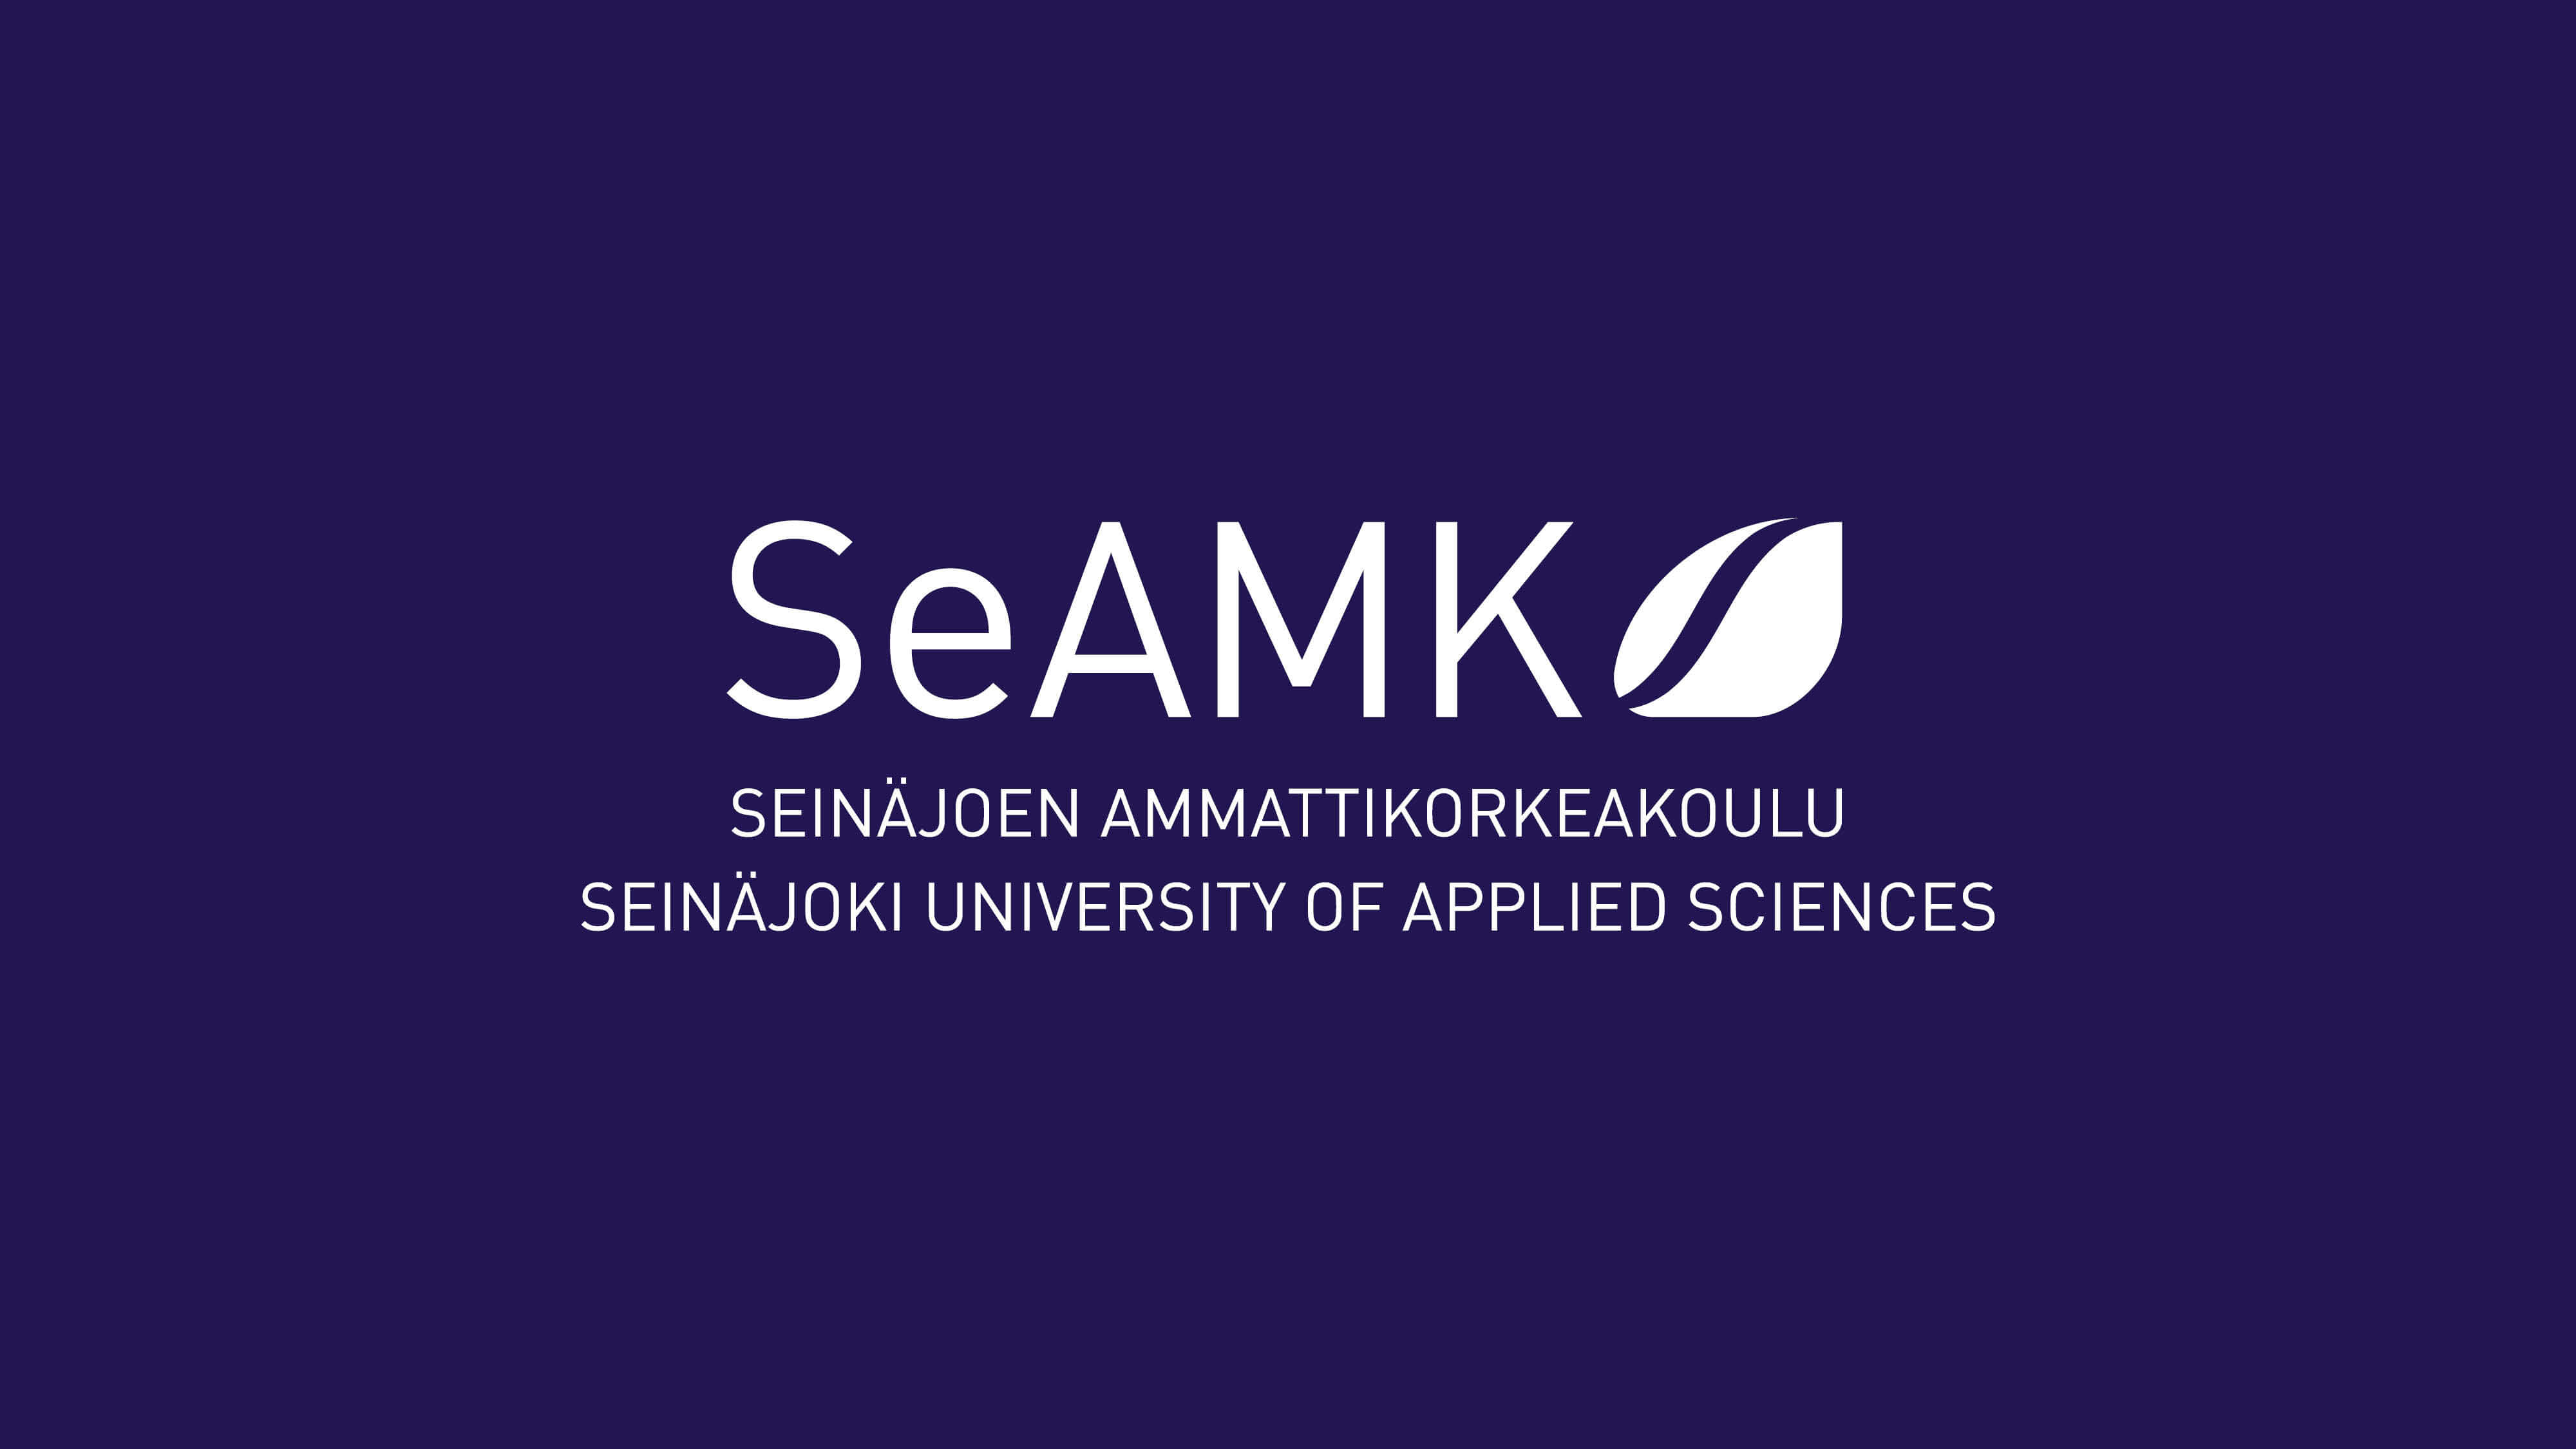 www.seamk.fi